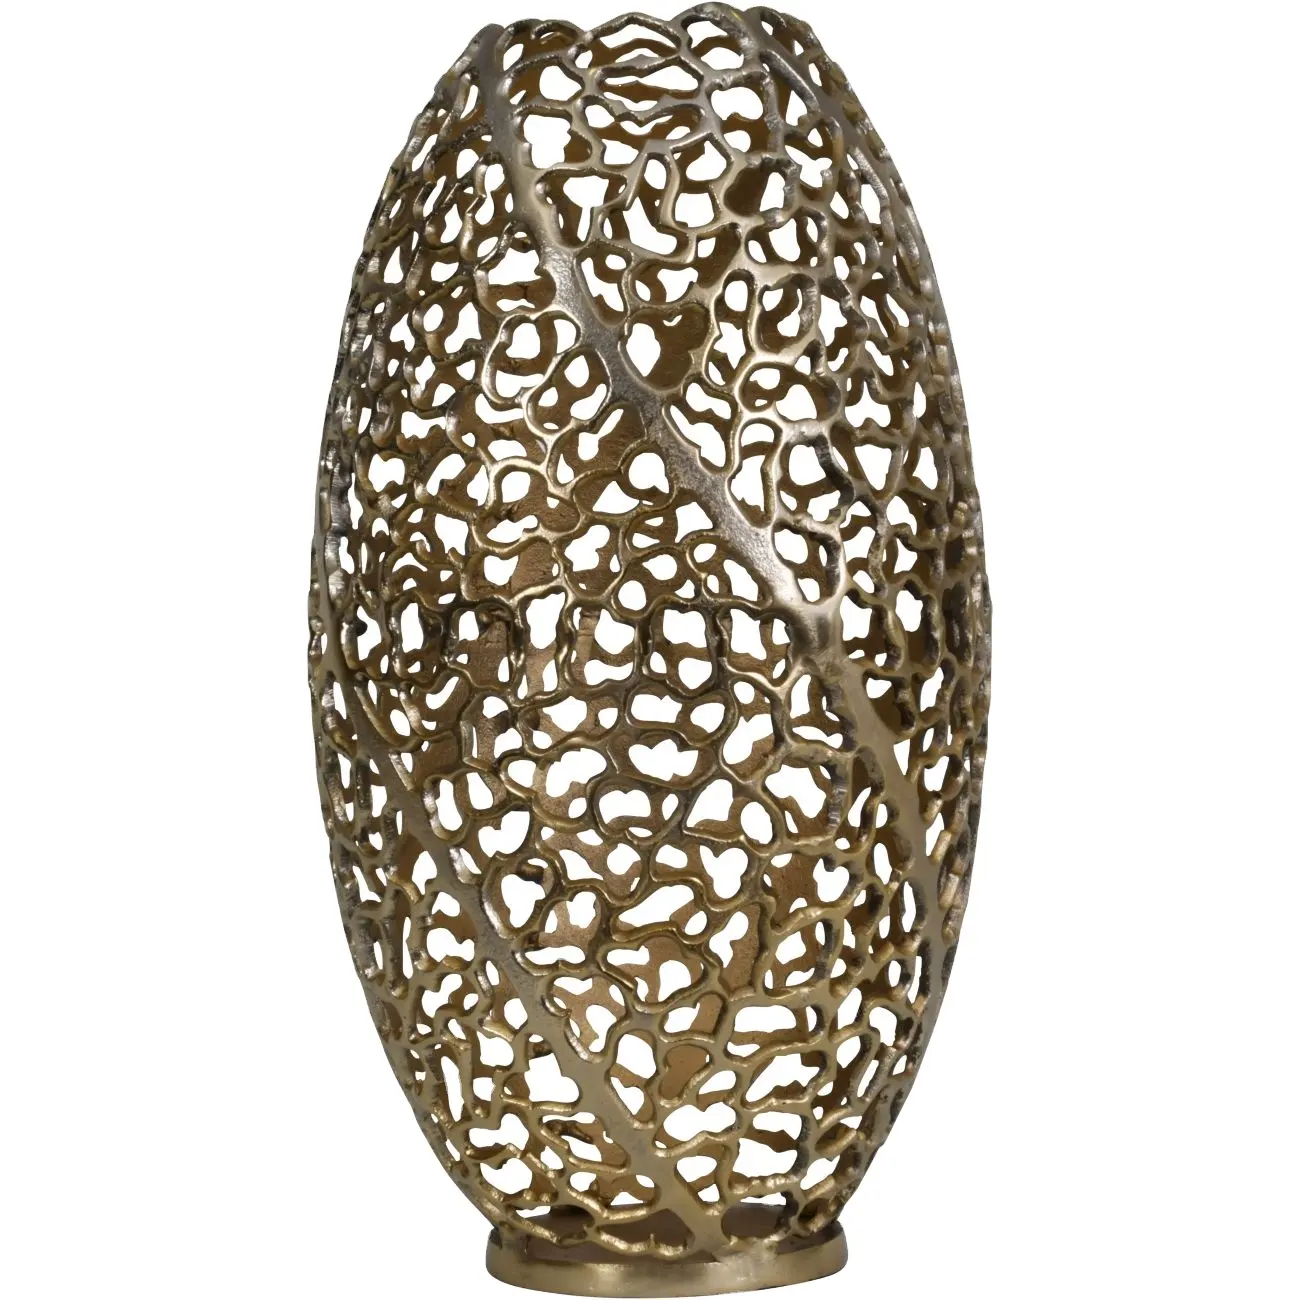 Moderne einfache kreative goldene Blumenvase Classic Home Wohnzimmer Dekoration Metall vase